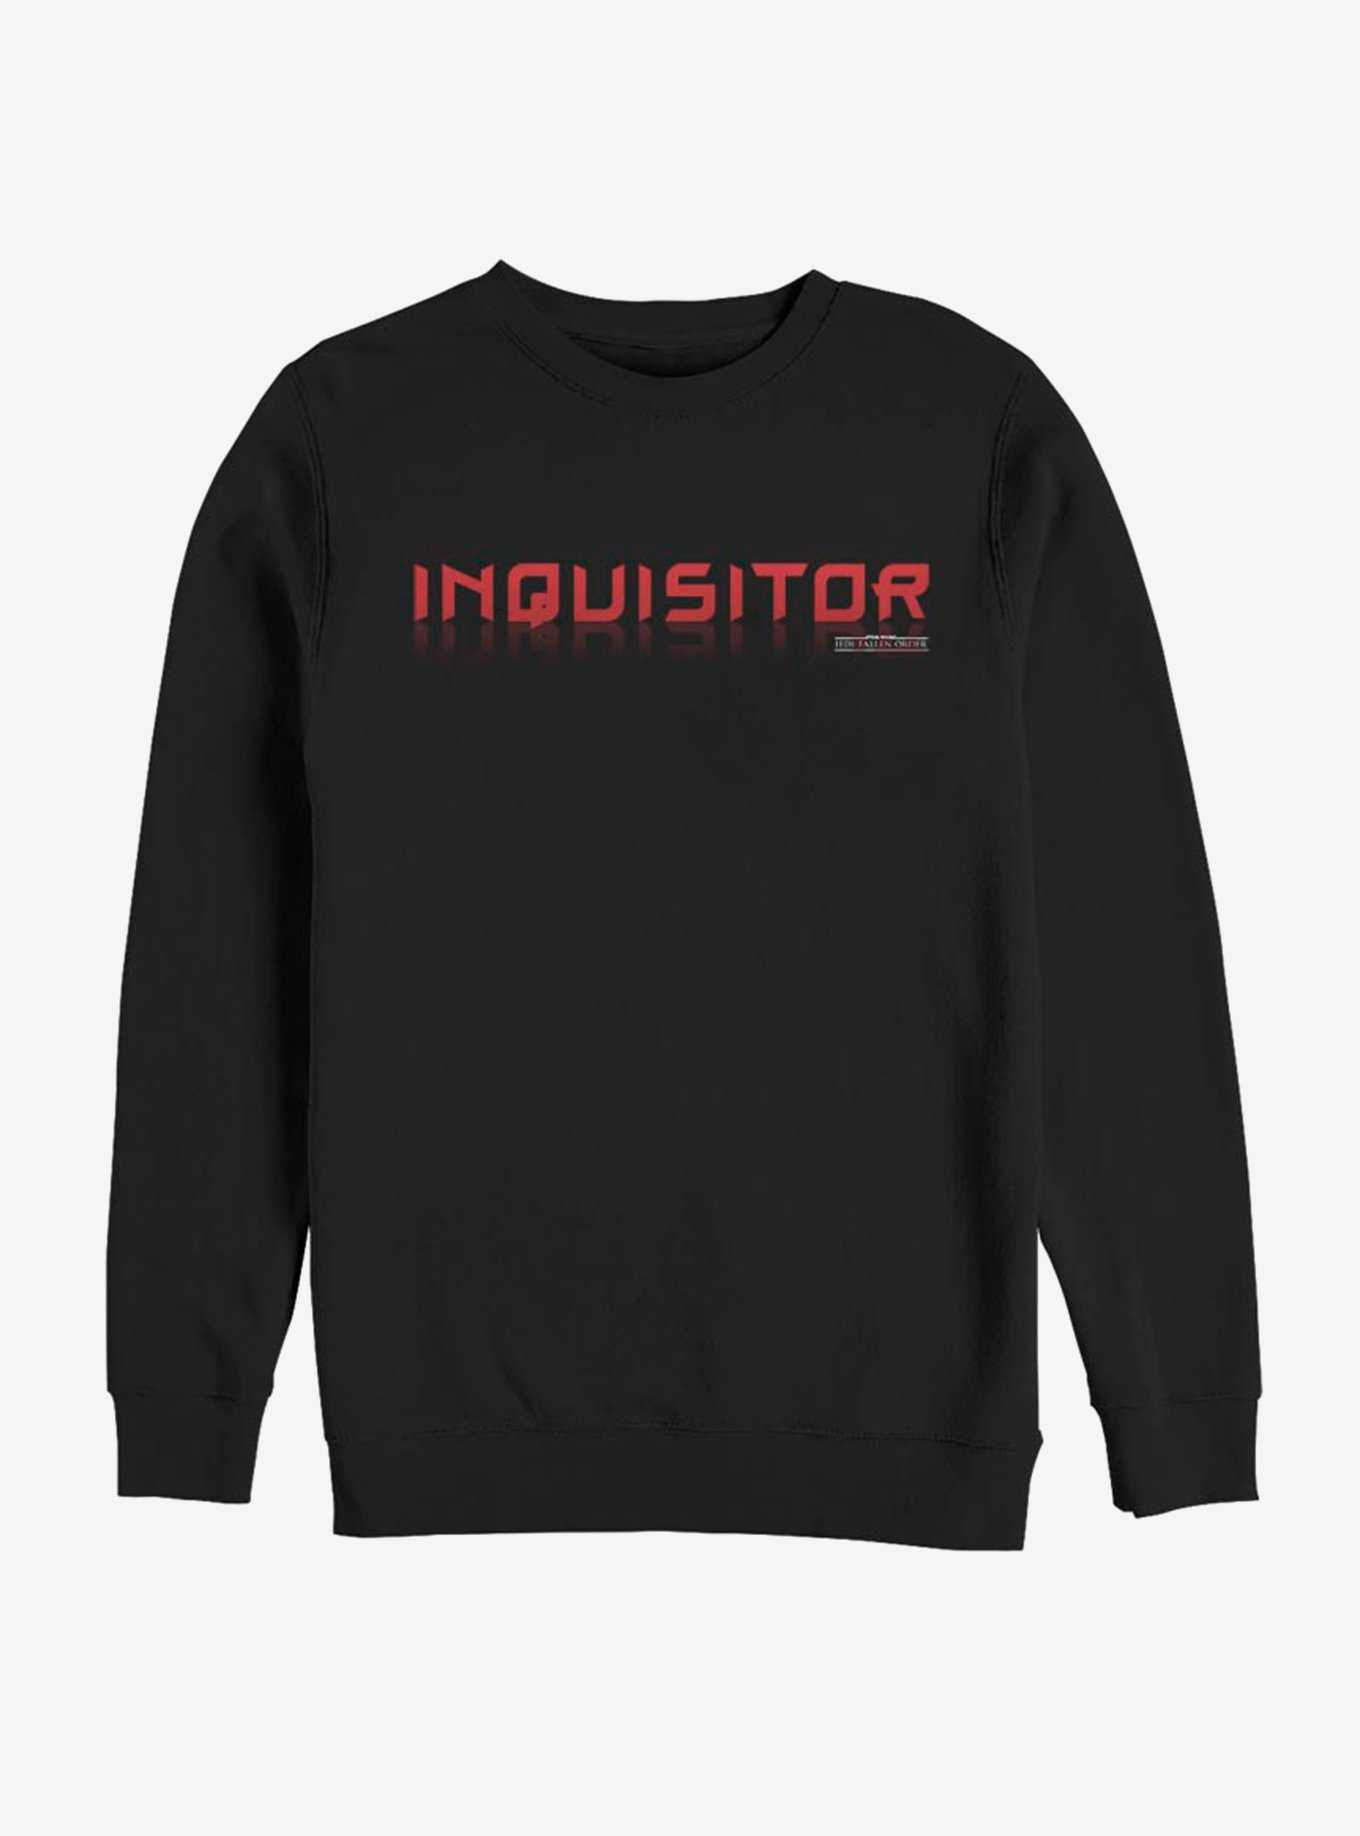 Star Wars Jedi: Fallen Order Inquisitor Wars Sweatshirt, , hi-res